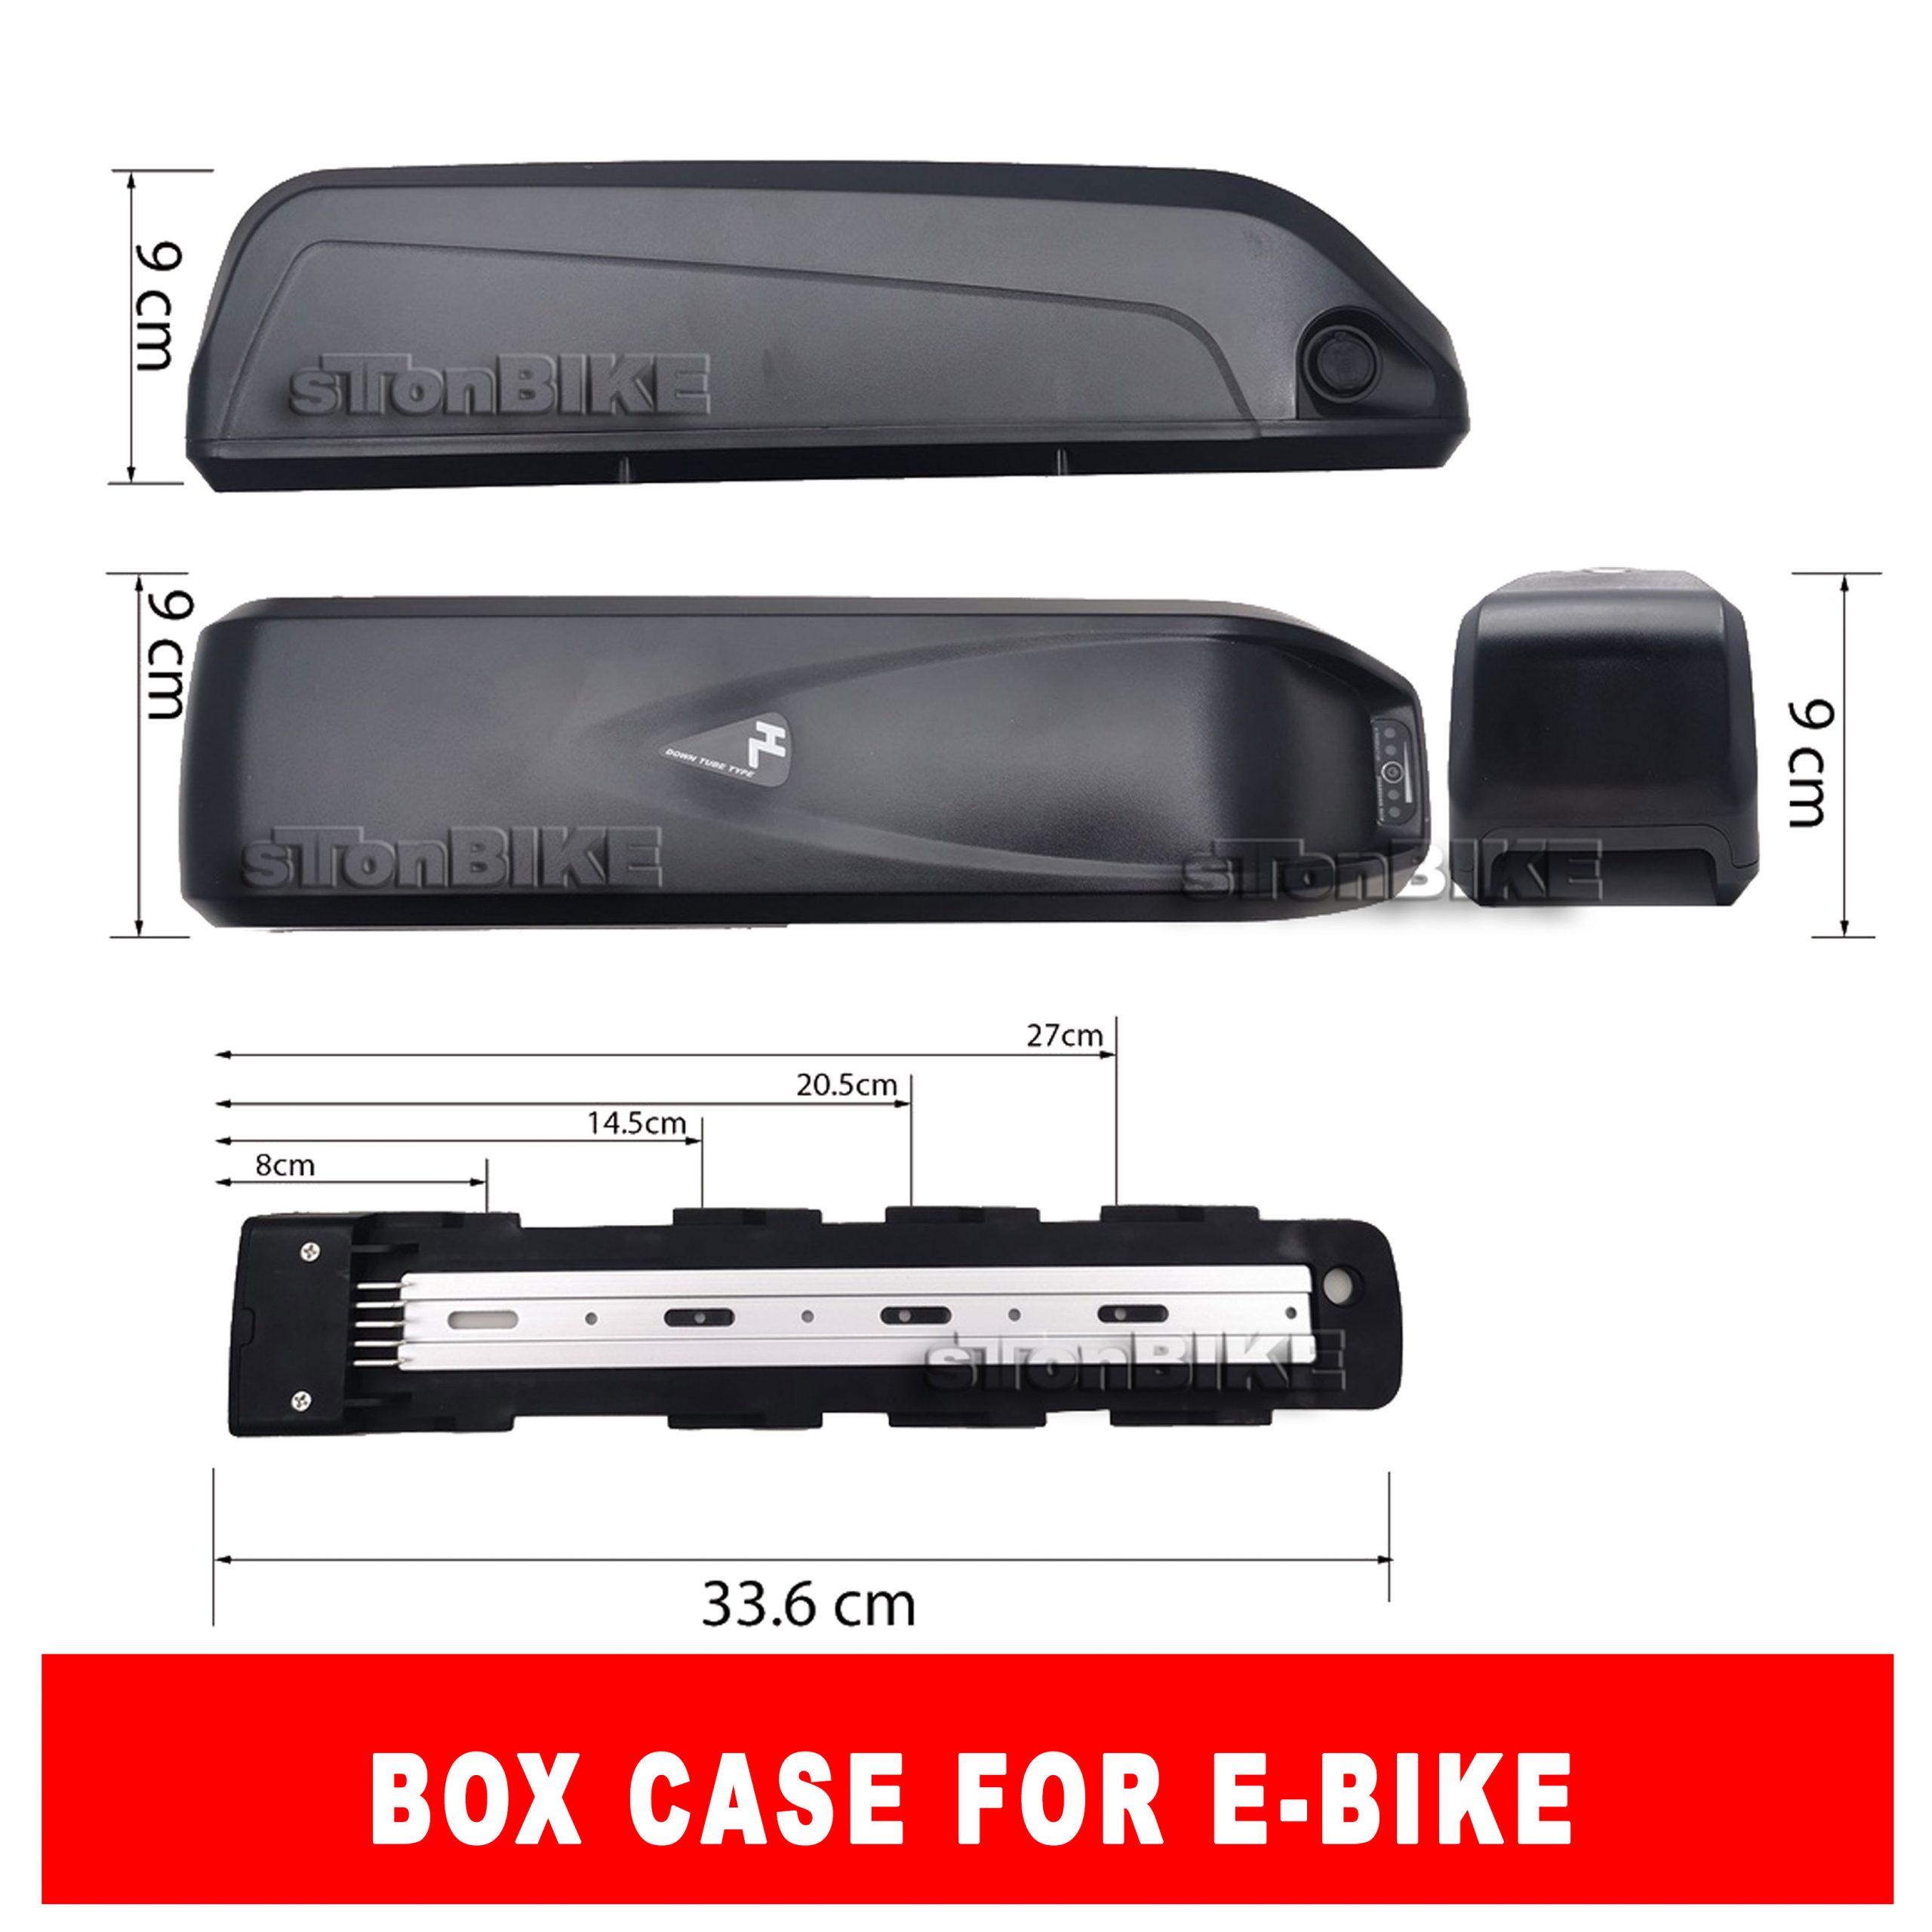 HL box casing for ebike